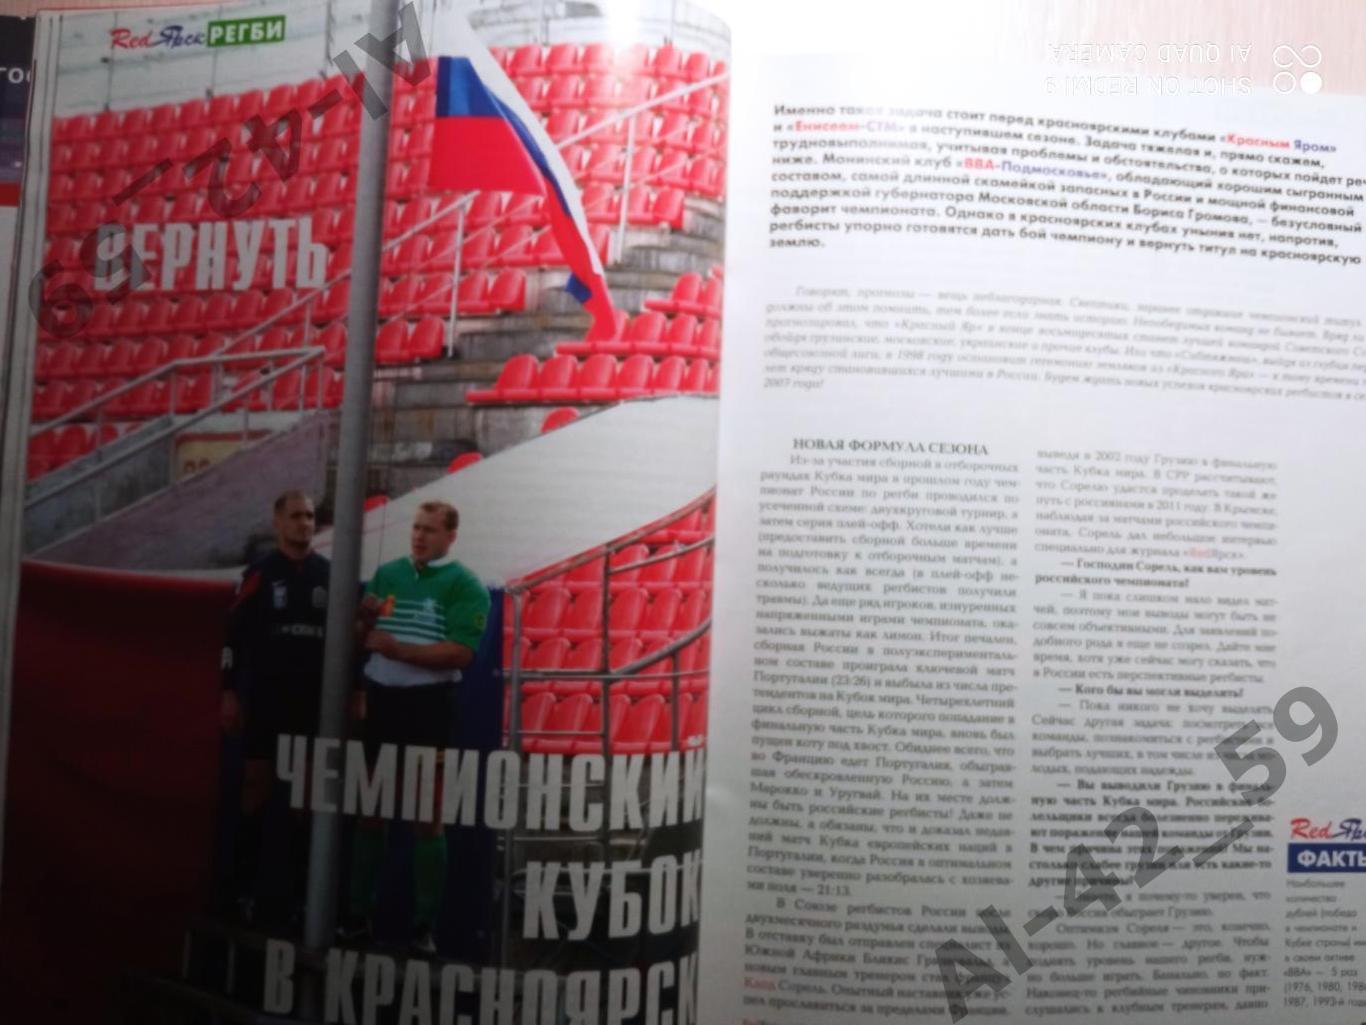 Журнал Redярск N4 (май-июнь 2007 ). 2